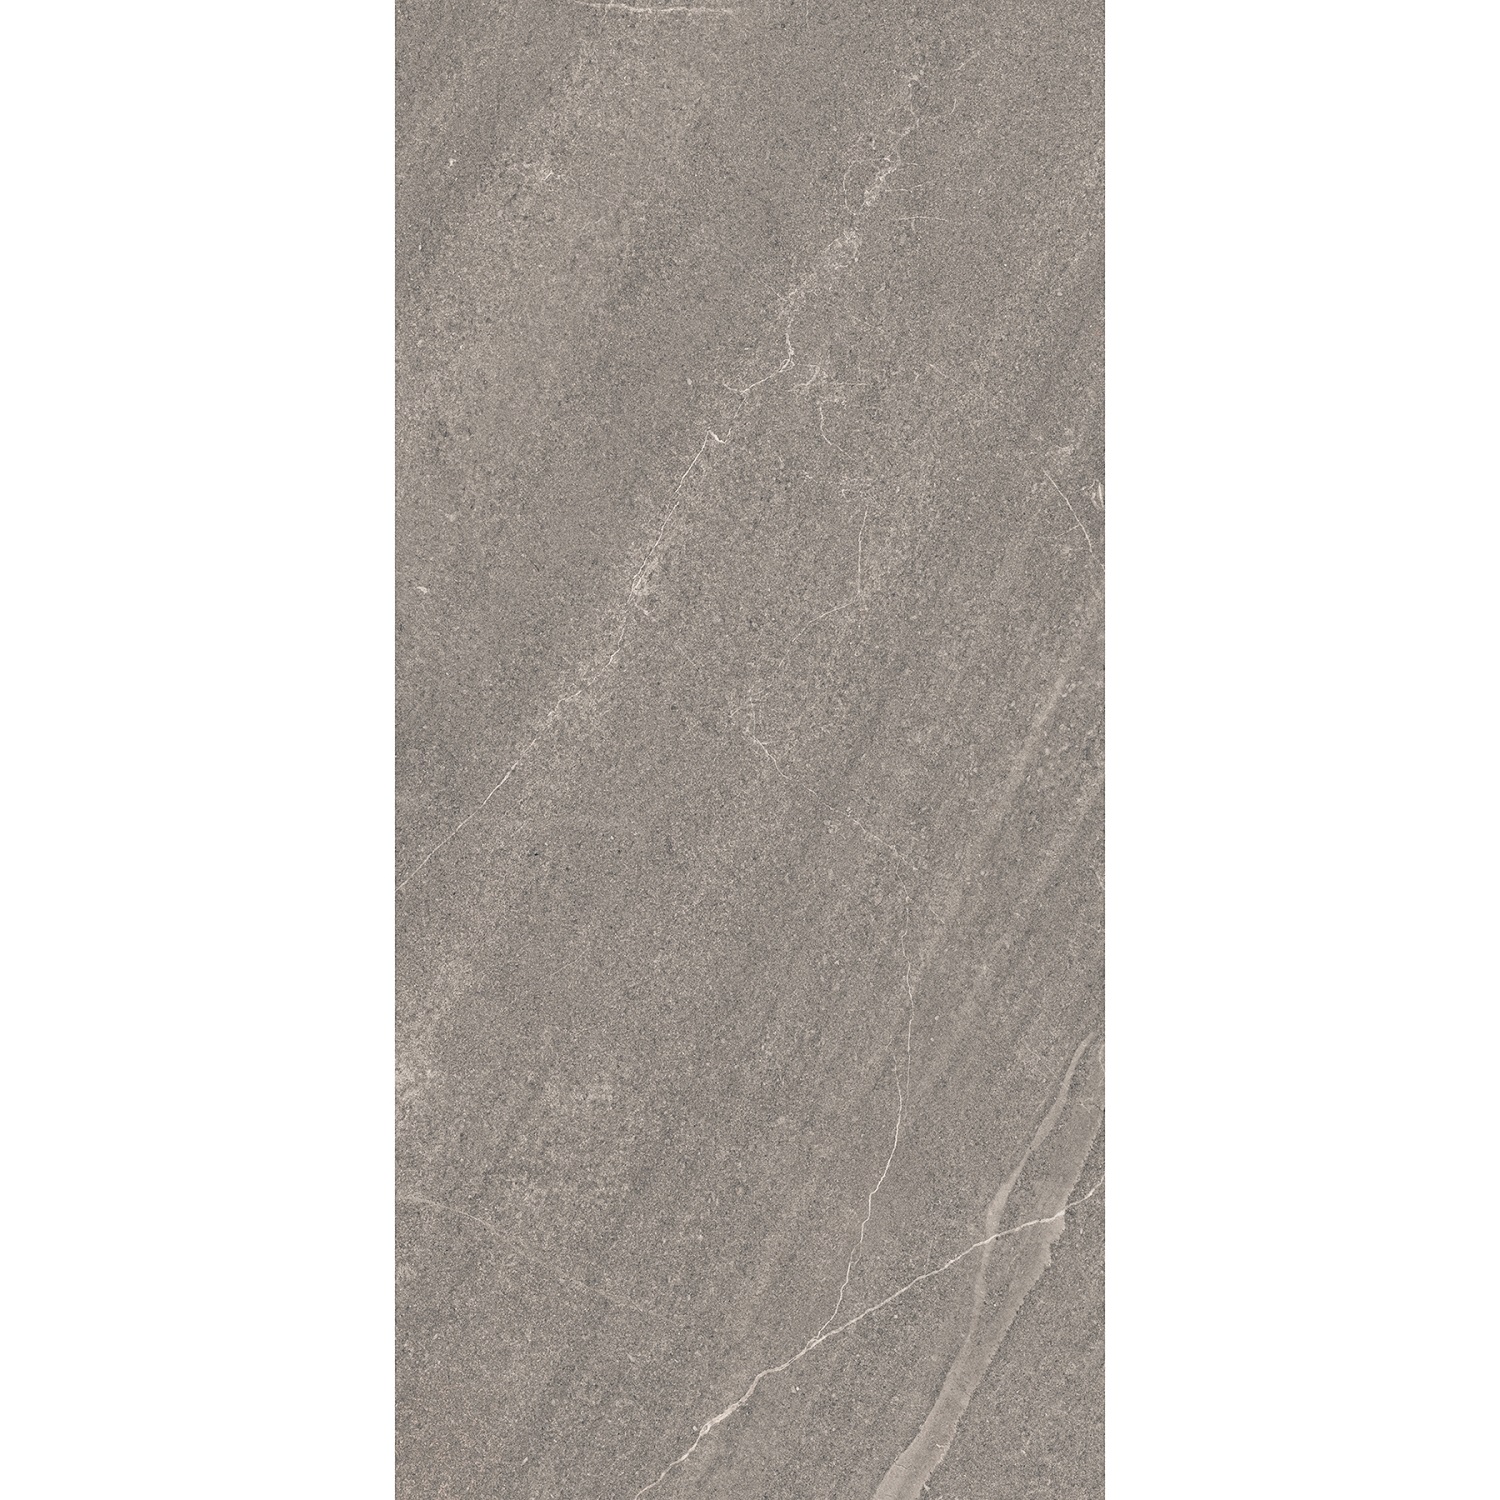 Плитка Estima Gabbro GB02 неполированный серый 80x160 см